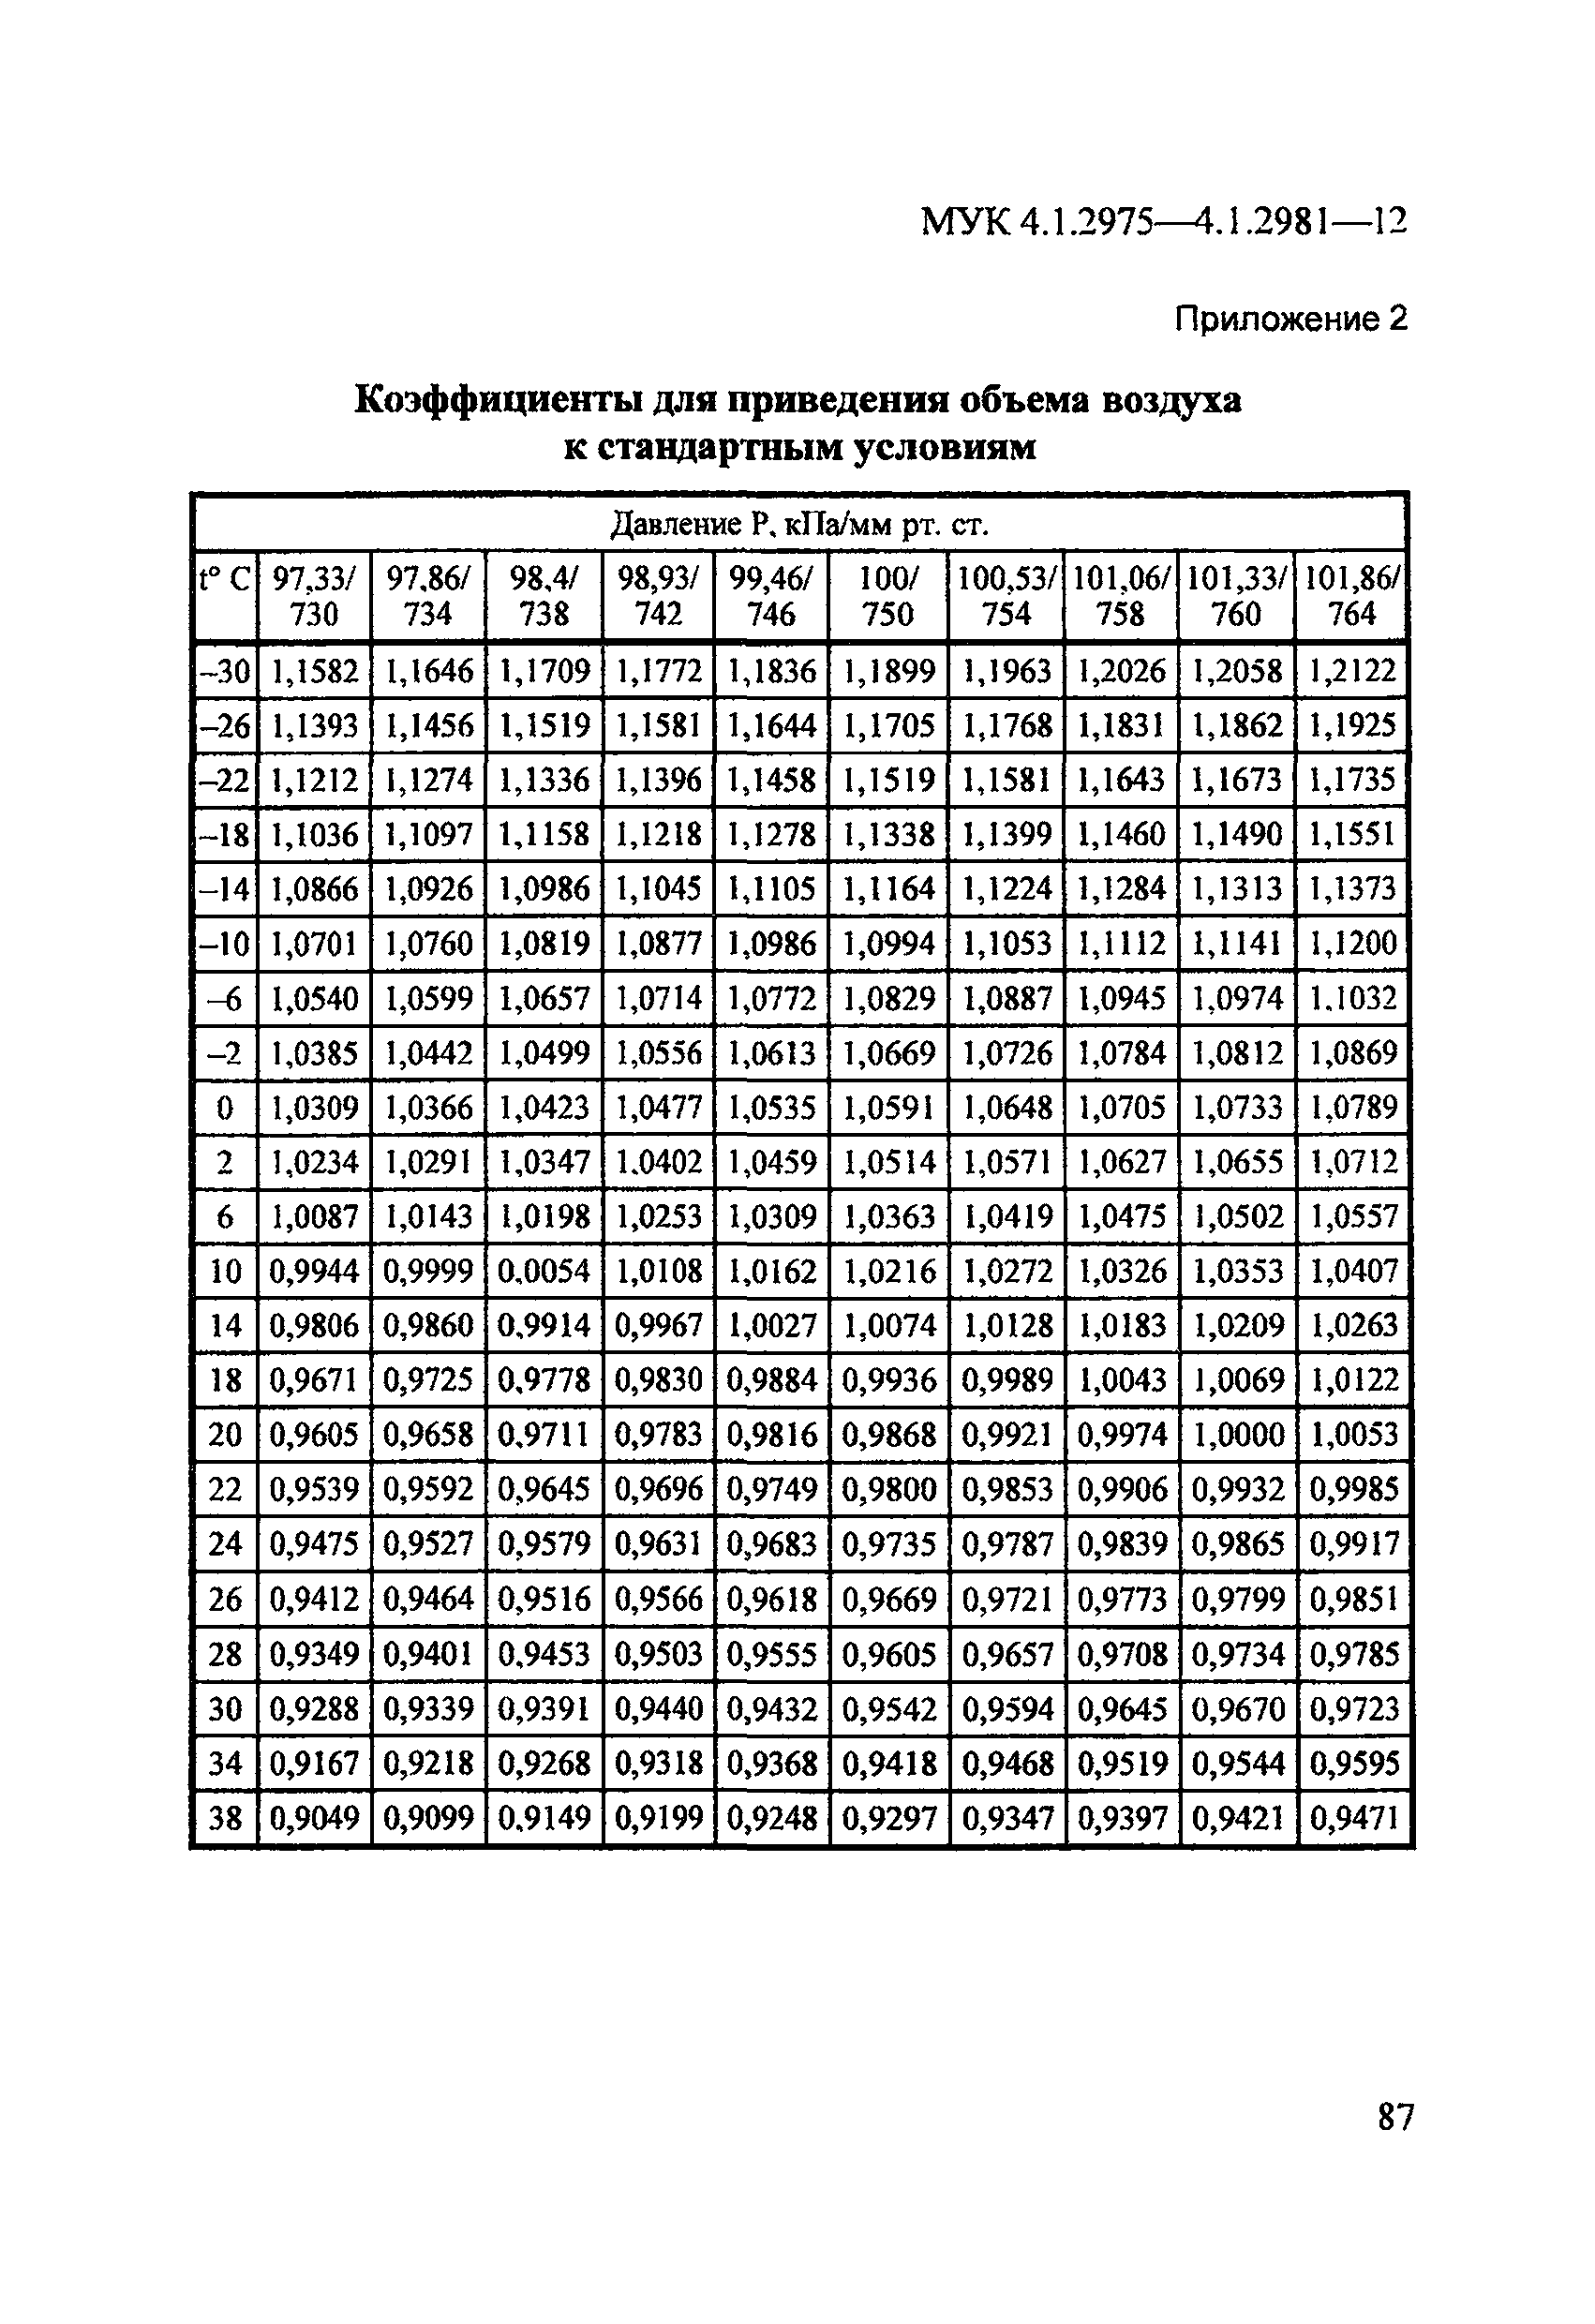 МУК 4.1.2979-12